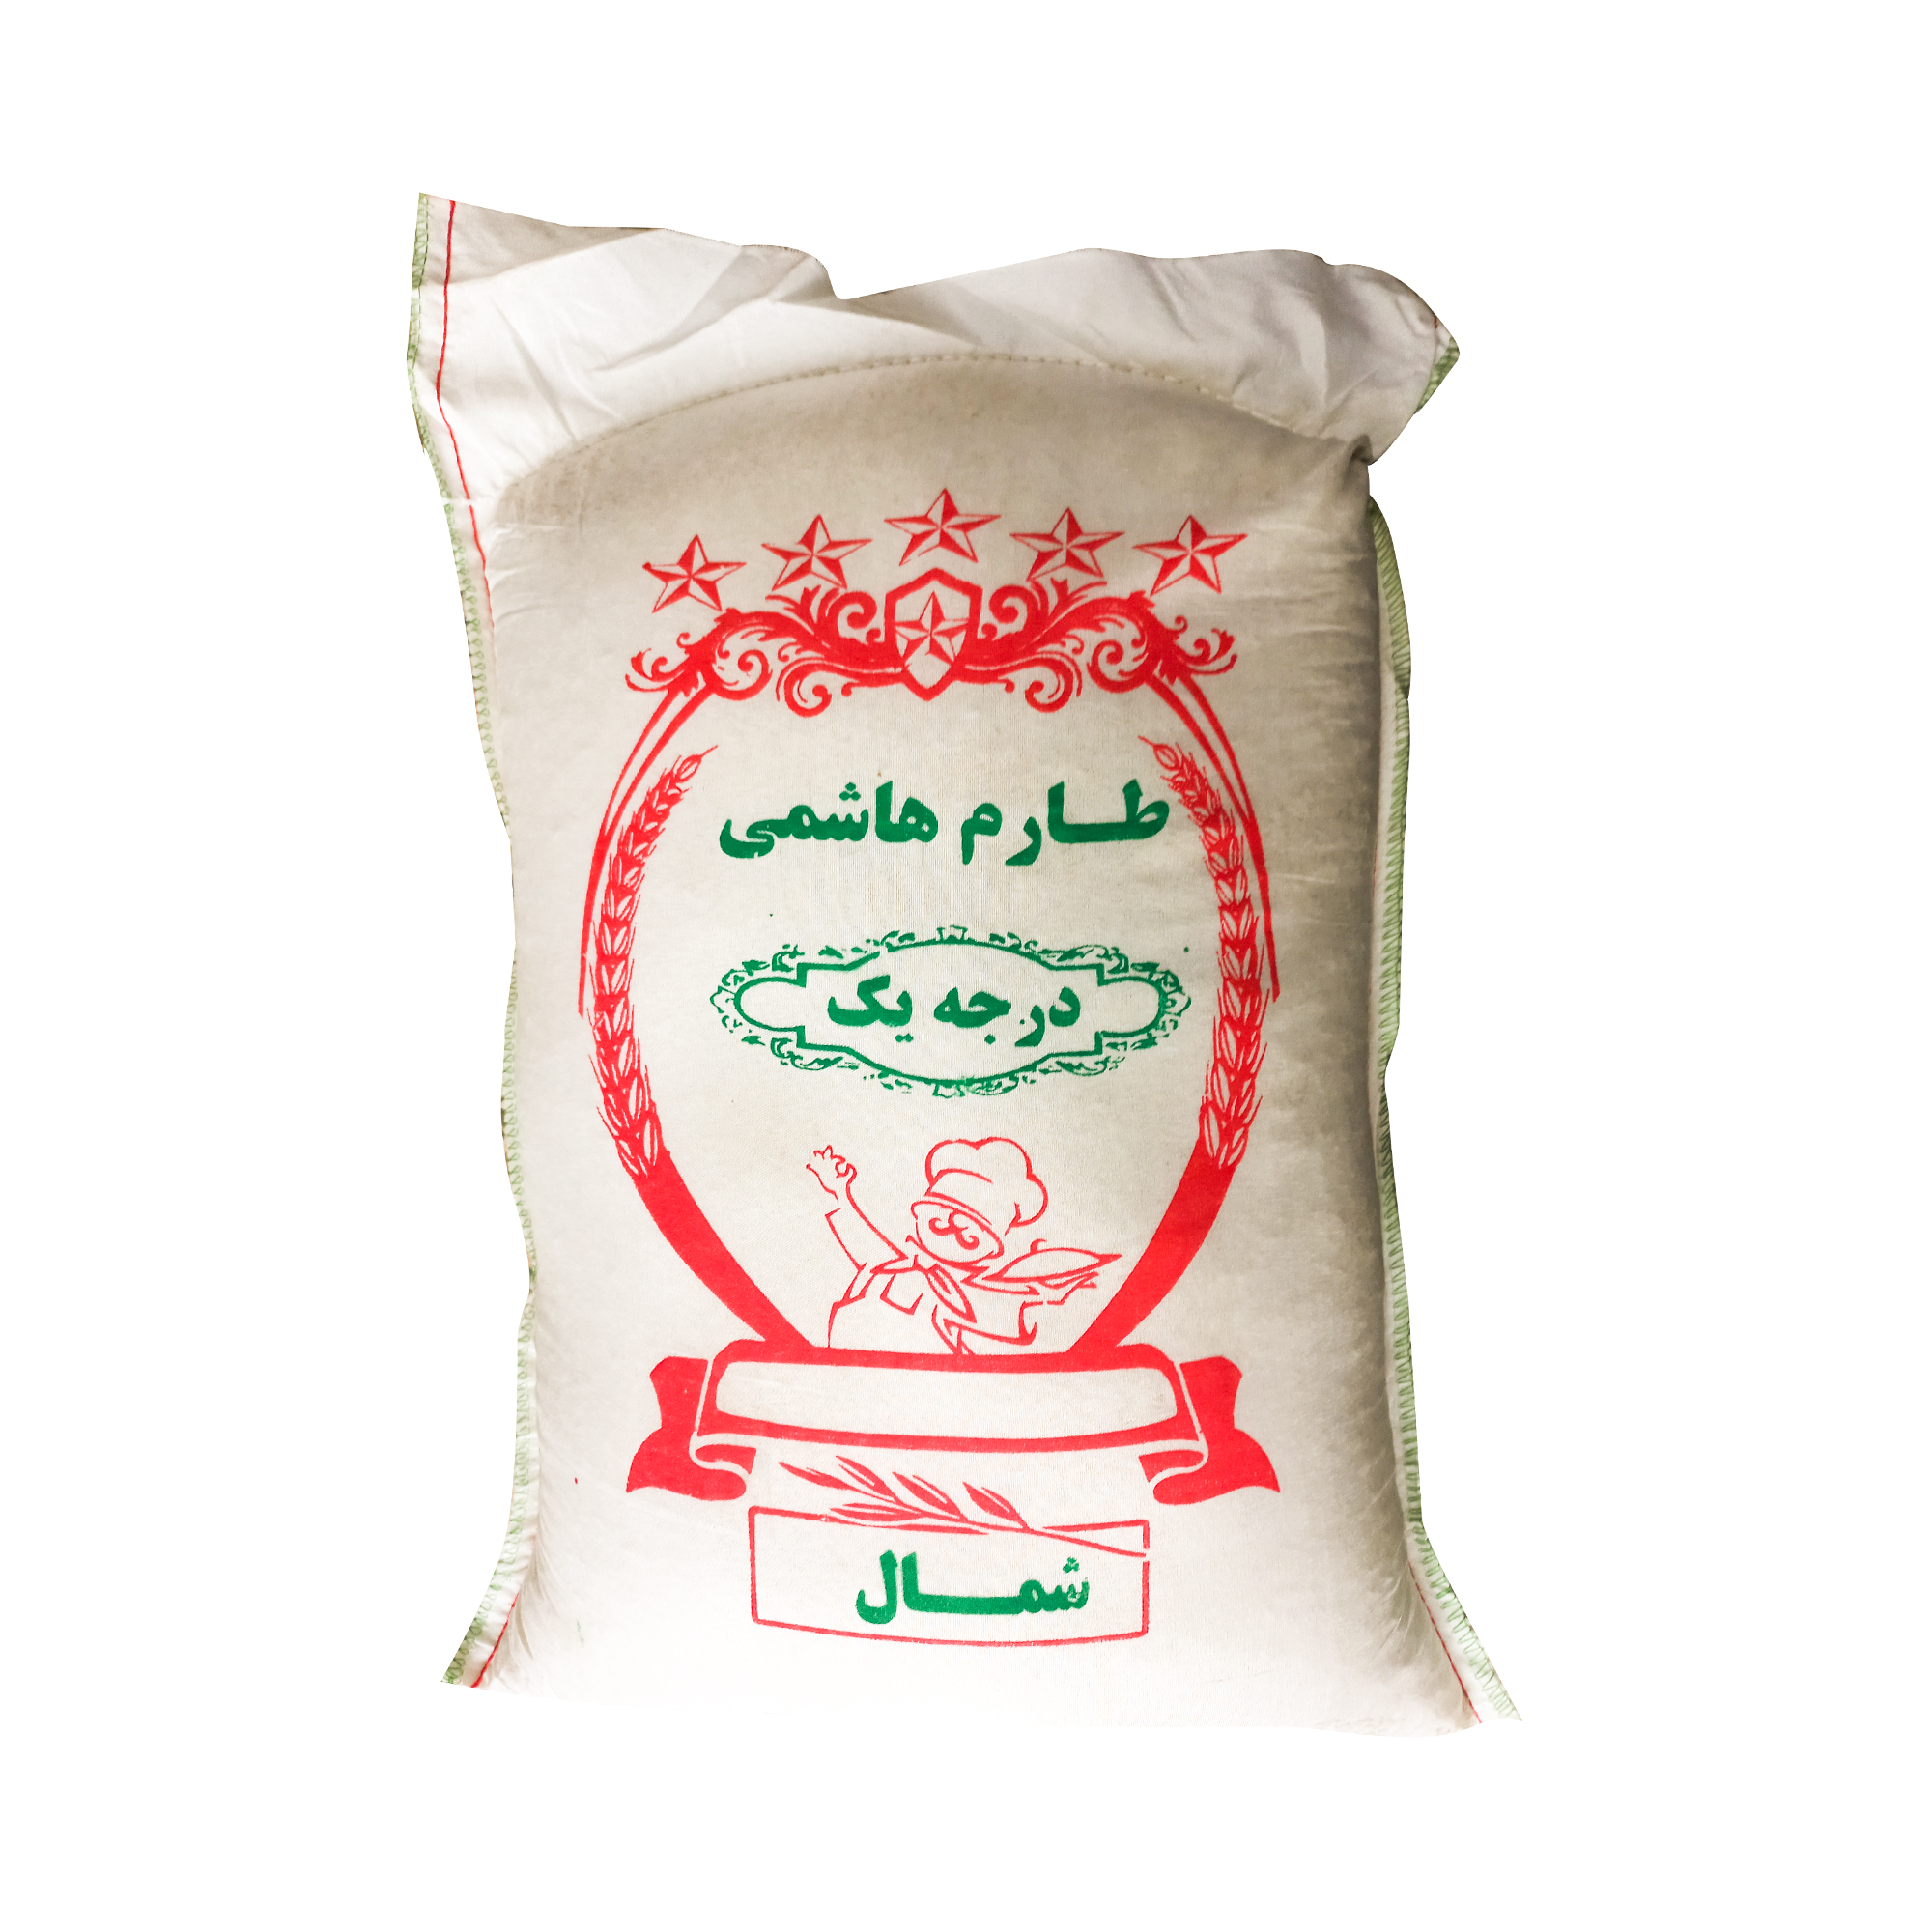 نکته خرید - قیمت روز برنج ایرانی طارم هاشمی درجه یک - 10 کیلوگرم خرید